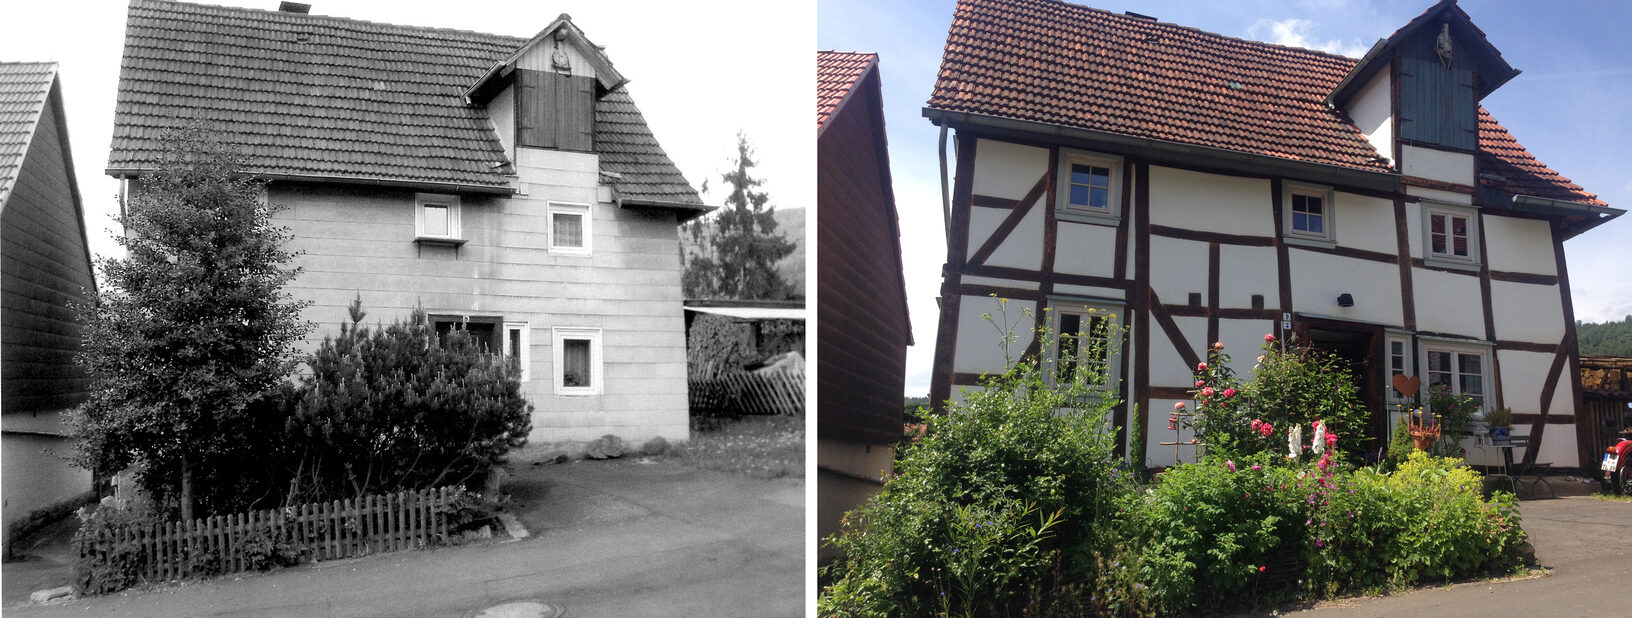 Der Preisträger für den DenkMalPreis 2017, Thomas Linke, hat sein Fachwerkhaus in Fuldatal-Wilhelmshausen in ein wohnliches Schmuckstück verwandelt. Im Bild ein Vorher-Nachher-Vergleich.